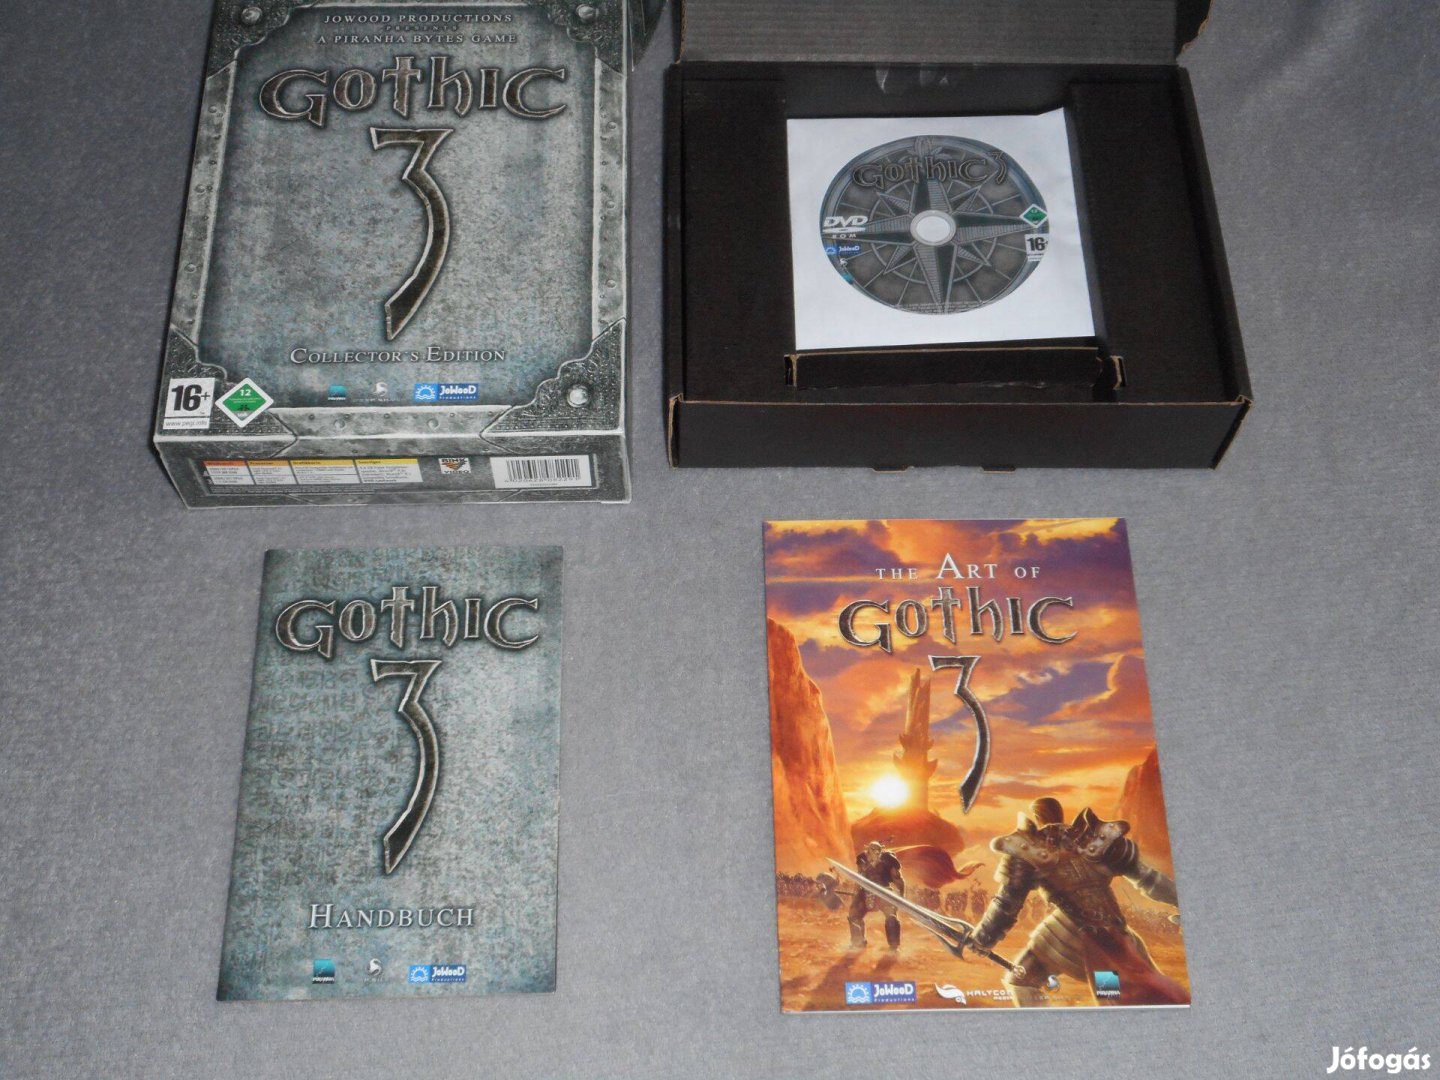 Gothic 3 Collector's Edition Bigbox Számítógépes PC játék, Ritka!